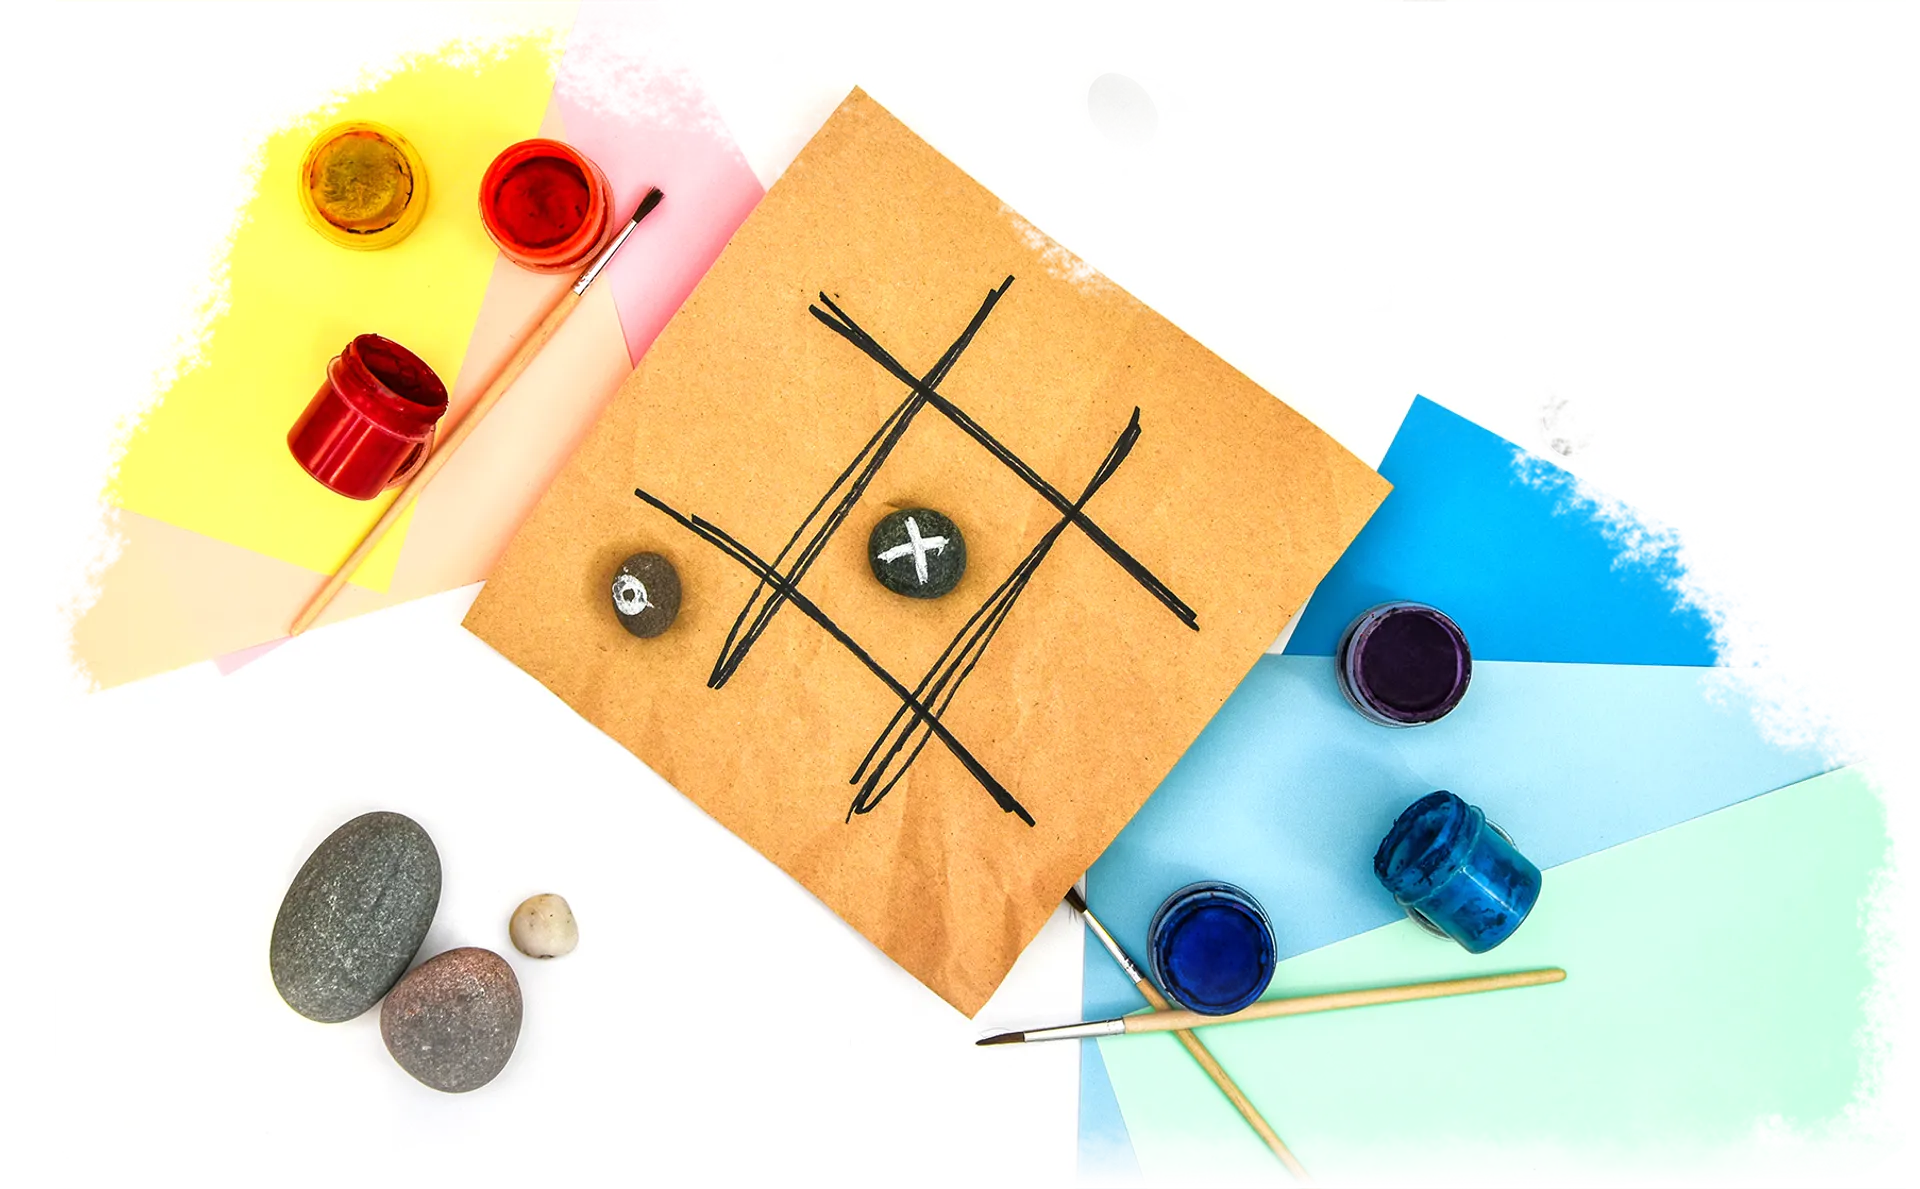 Image d’un jeu de tic-tac-toe fabriqué à l’aide de matériaux réutilisés.